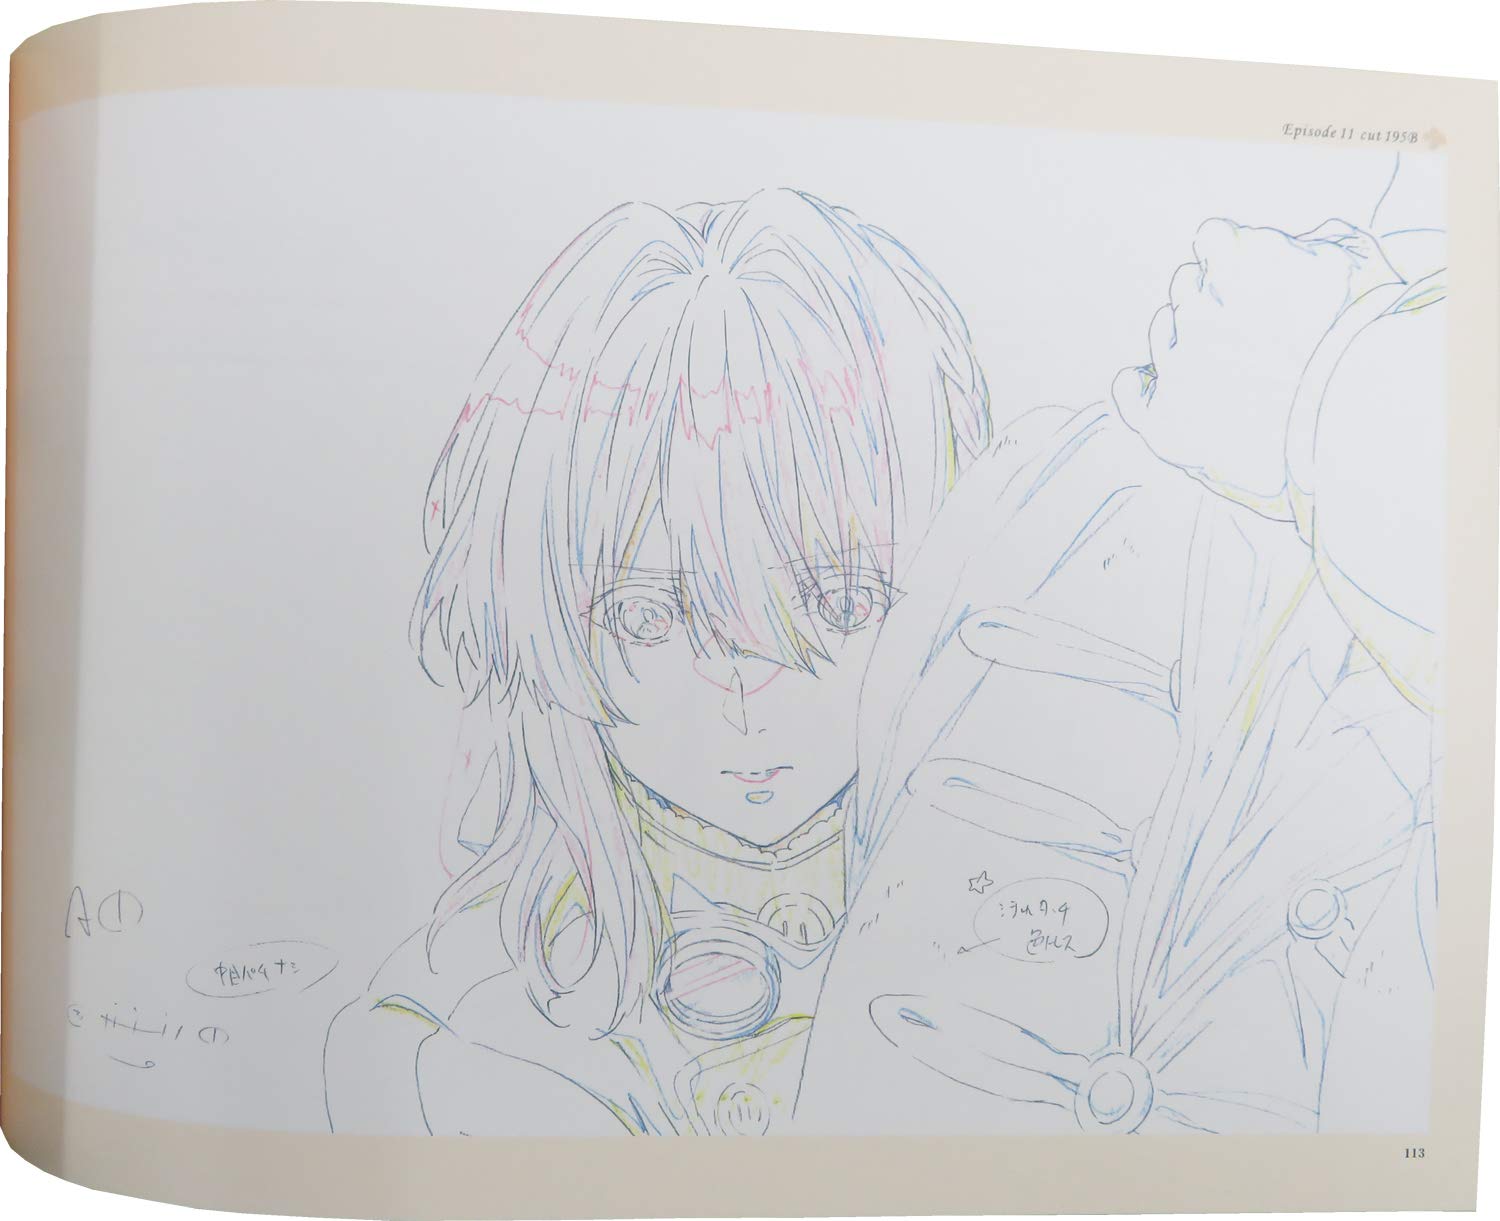 Tận hưởng những khoảnh khắc đầy cảm xúc với bộ sưu tập Keyframes Volume 2 của Kyoto Animation cho tác phẩm Violet Evergarden. Trải nghiệm những nét vẽ tuyệt mỹ và các phân cảnh đẹp như cổ tích trong bộ sưu tập này.